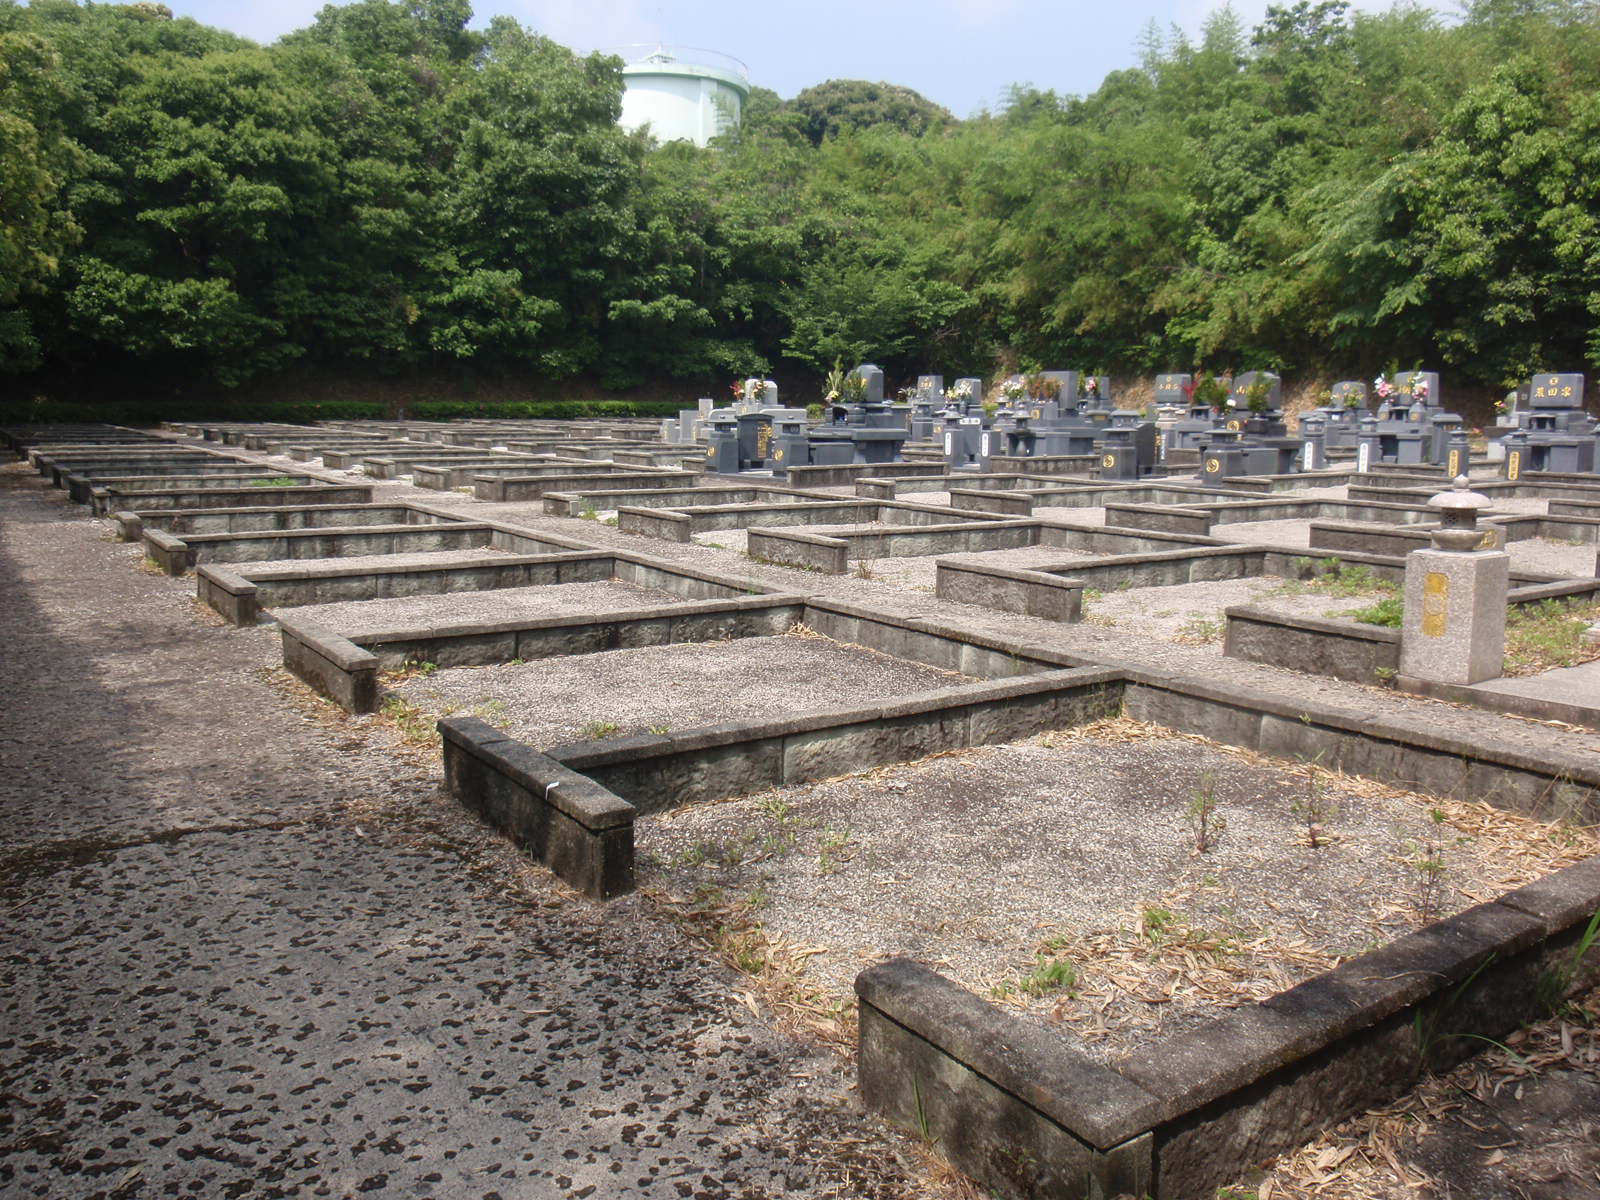 生い茂る草木を背景にした墓地に数基のお墓が建ち、四角く区切られたお墓がない空き区画が点在している様子の写真